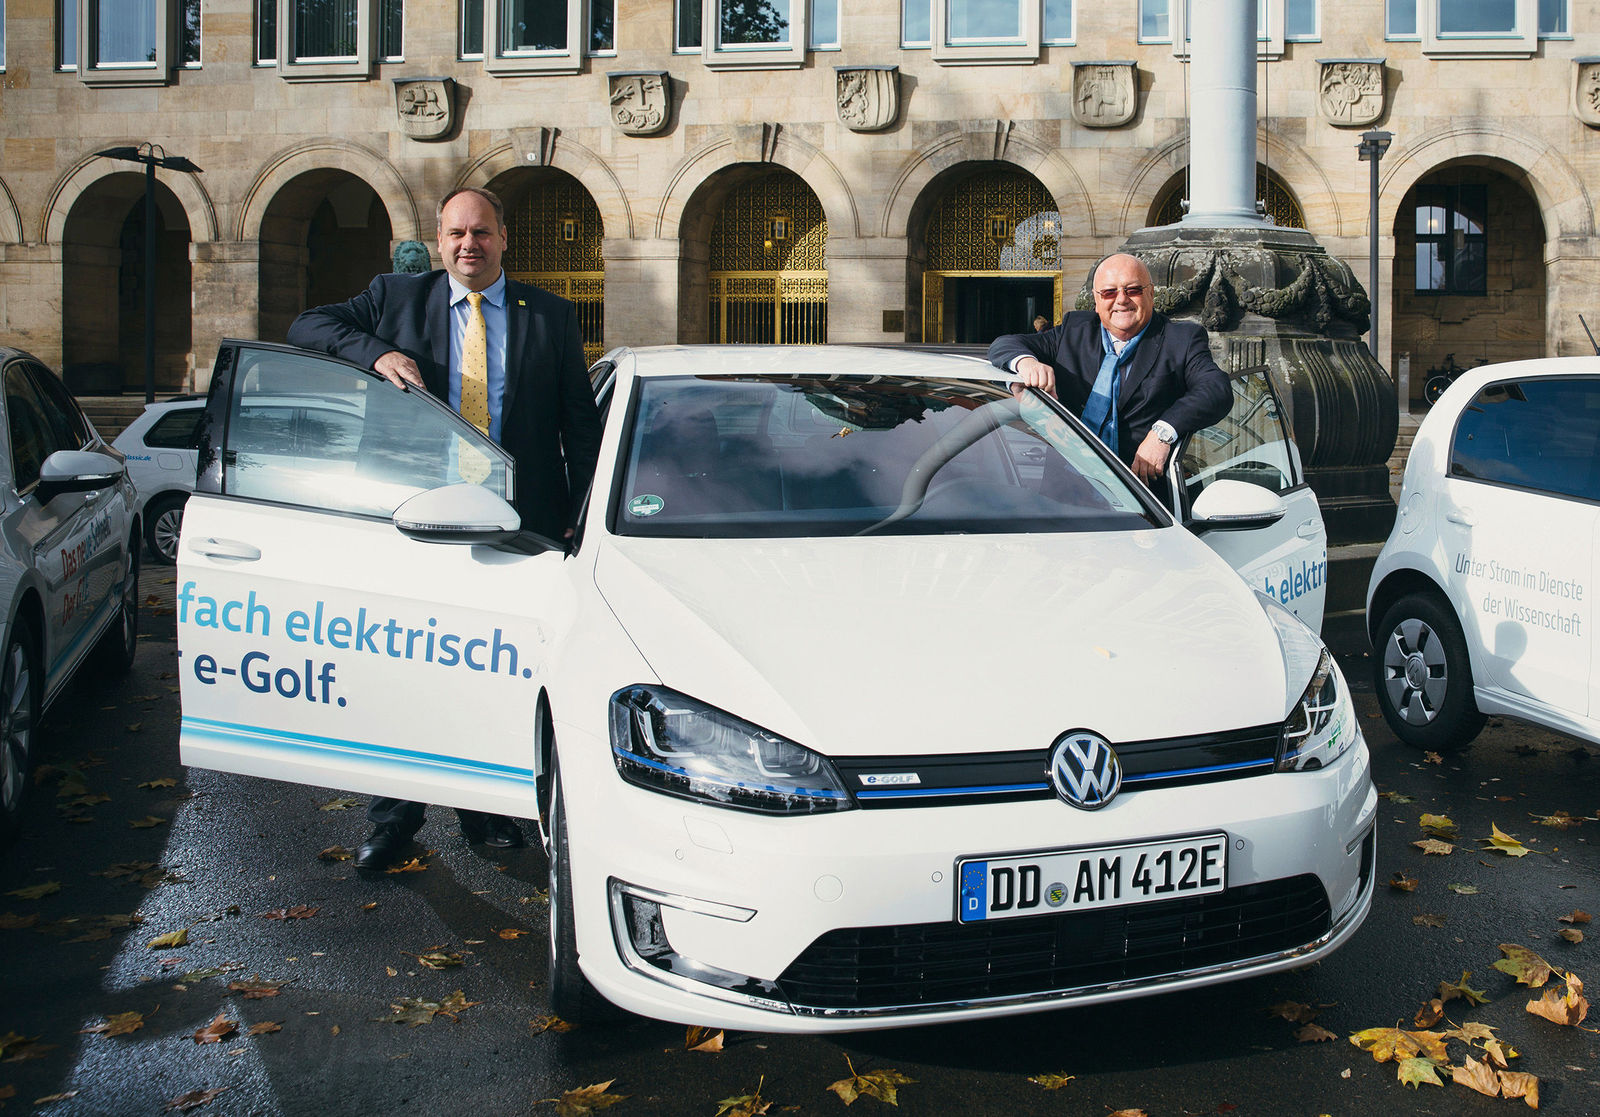 Volkswagen Sachsen und Landeshauptstadt Dresden vereinbaren Partnerschaft zu Elektromobilität und Digitalisierung